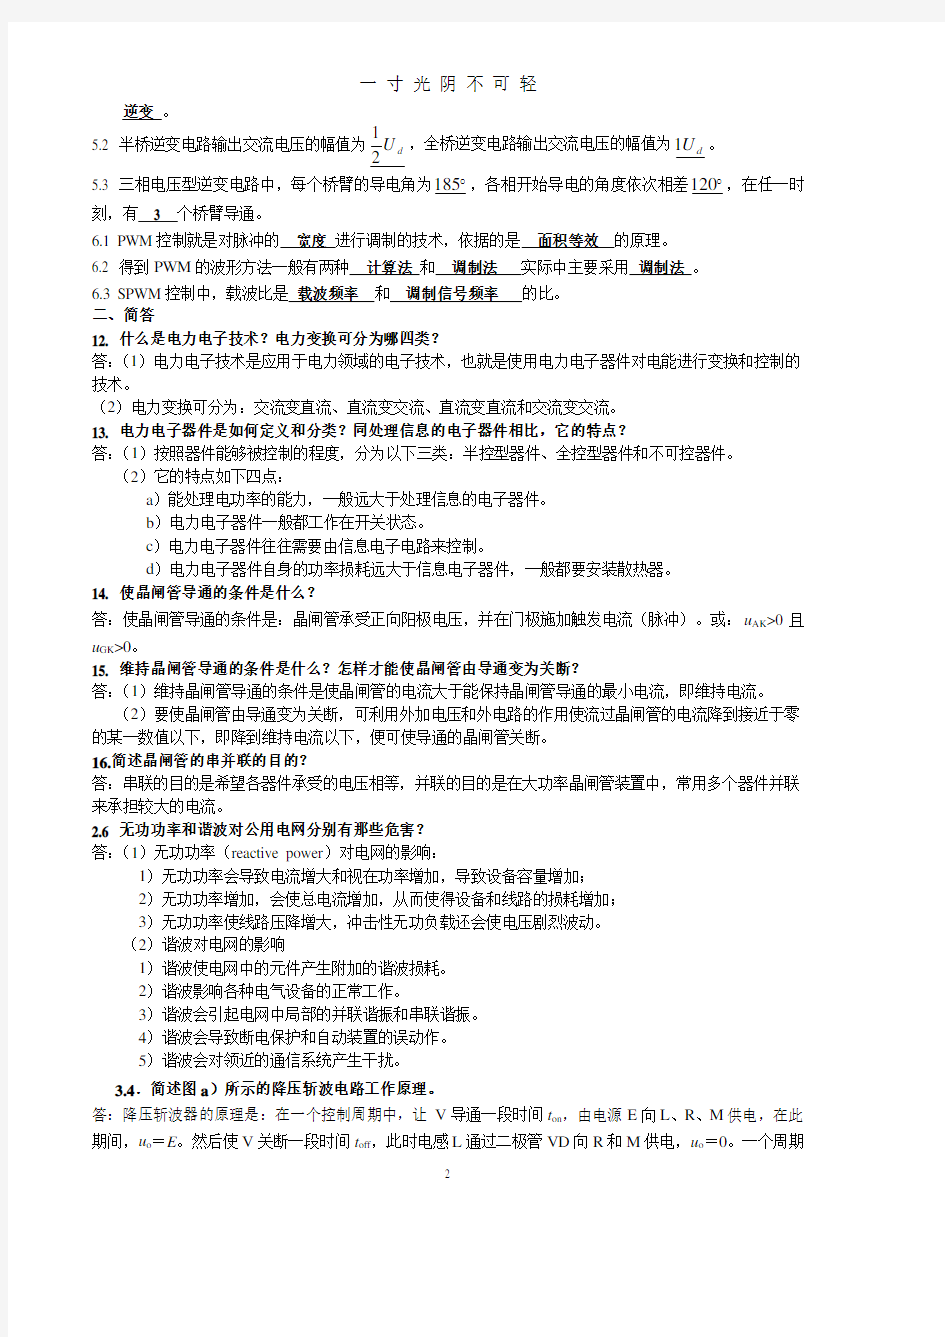 电力电子技术考试复习资料.pdf